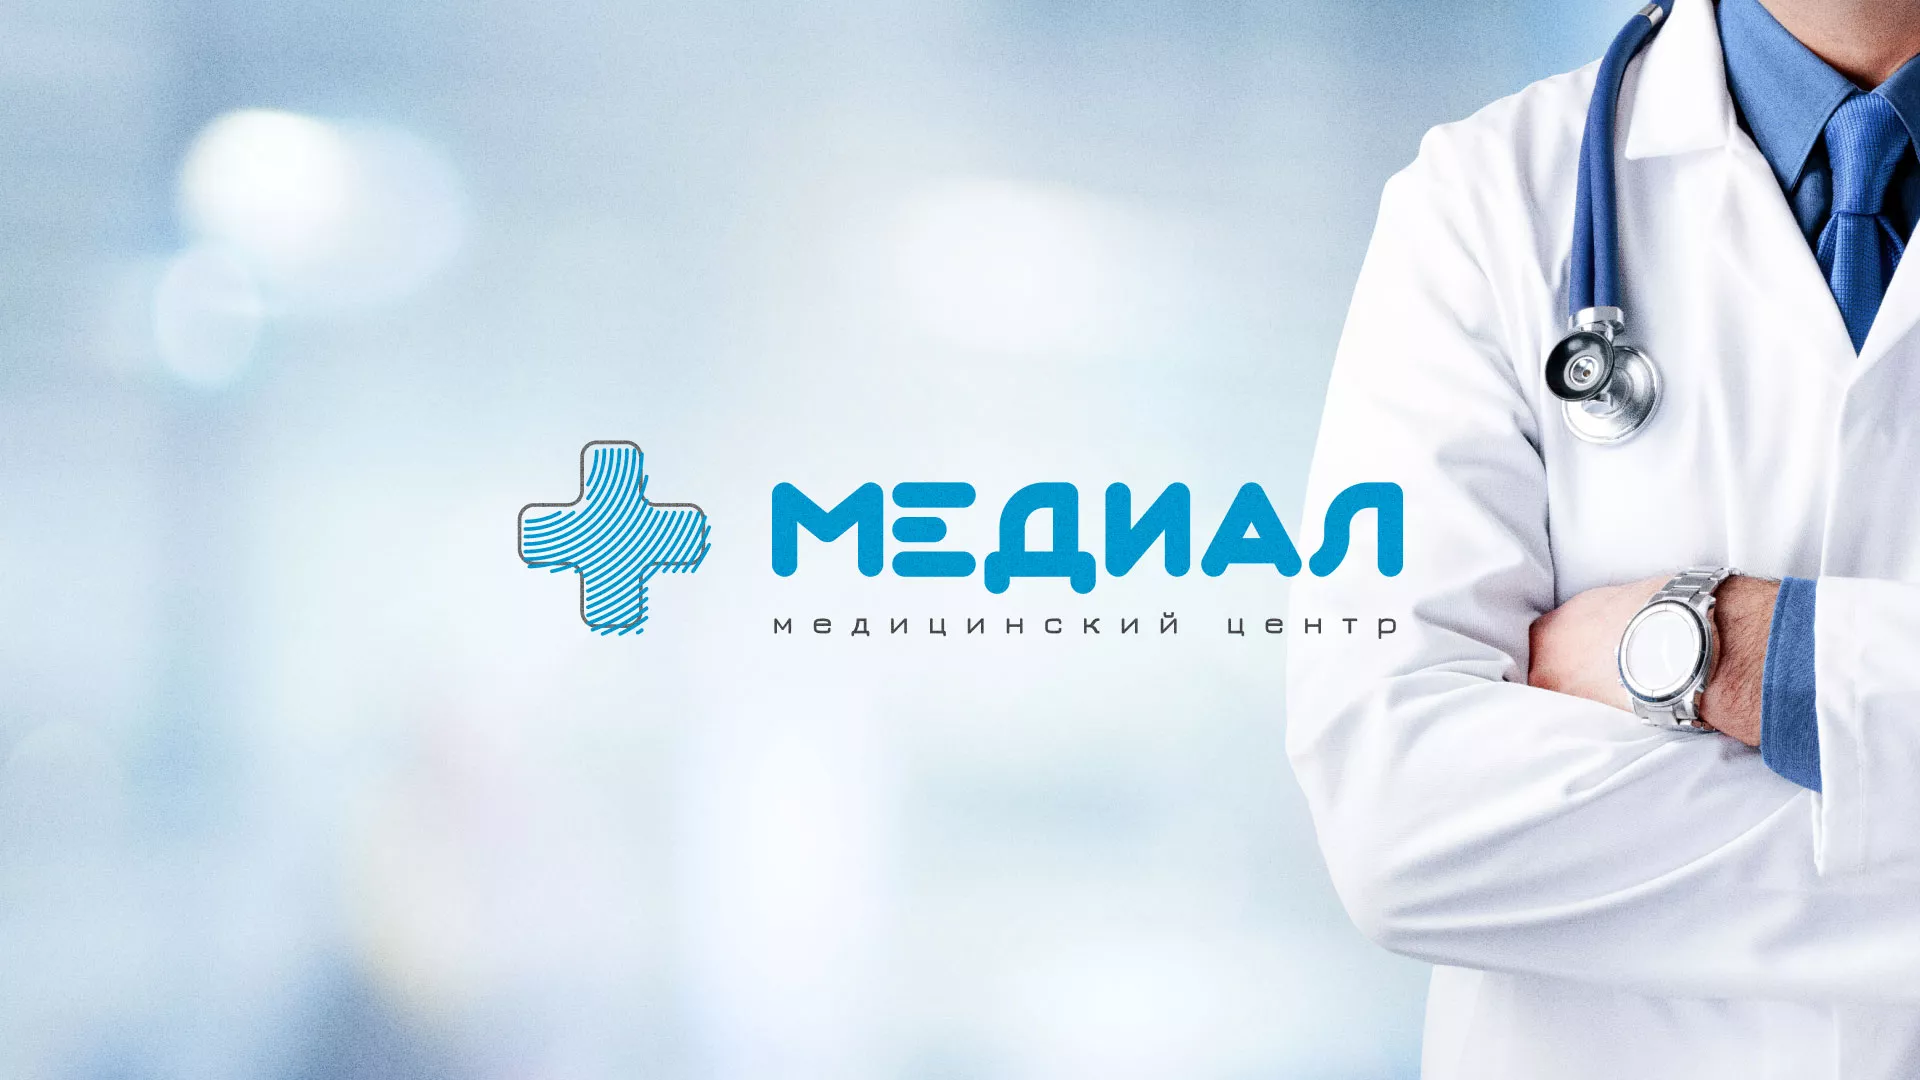 Создание сайта для медицинского центра «Медиал» в Костерёво